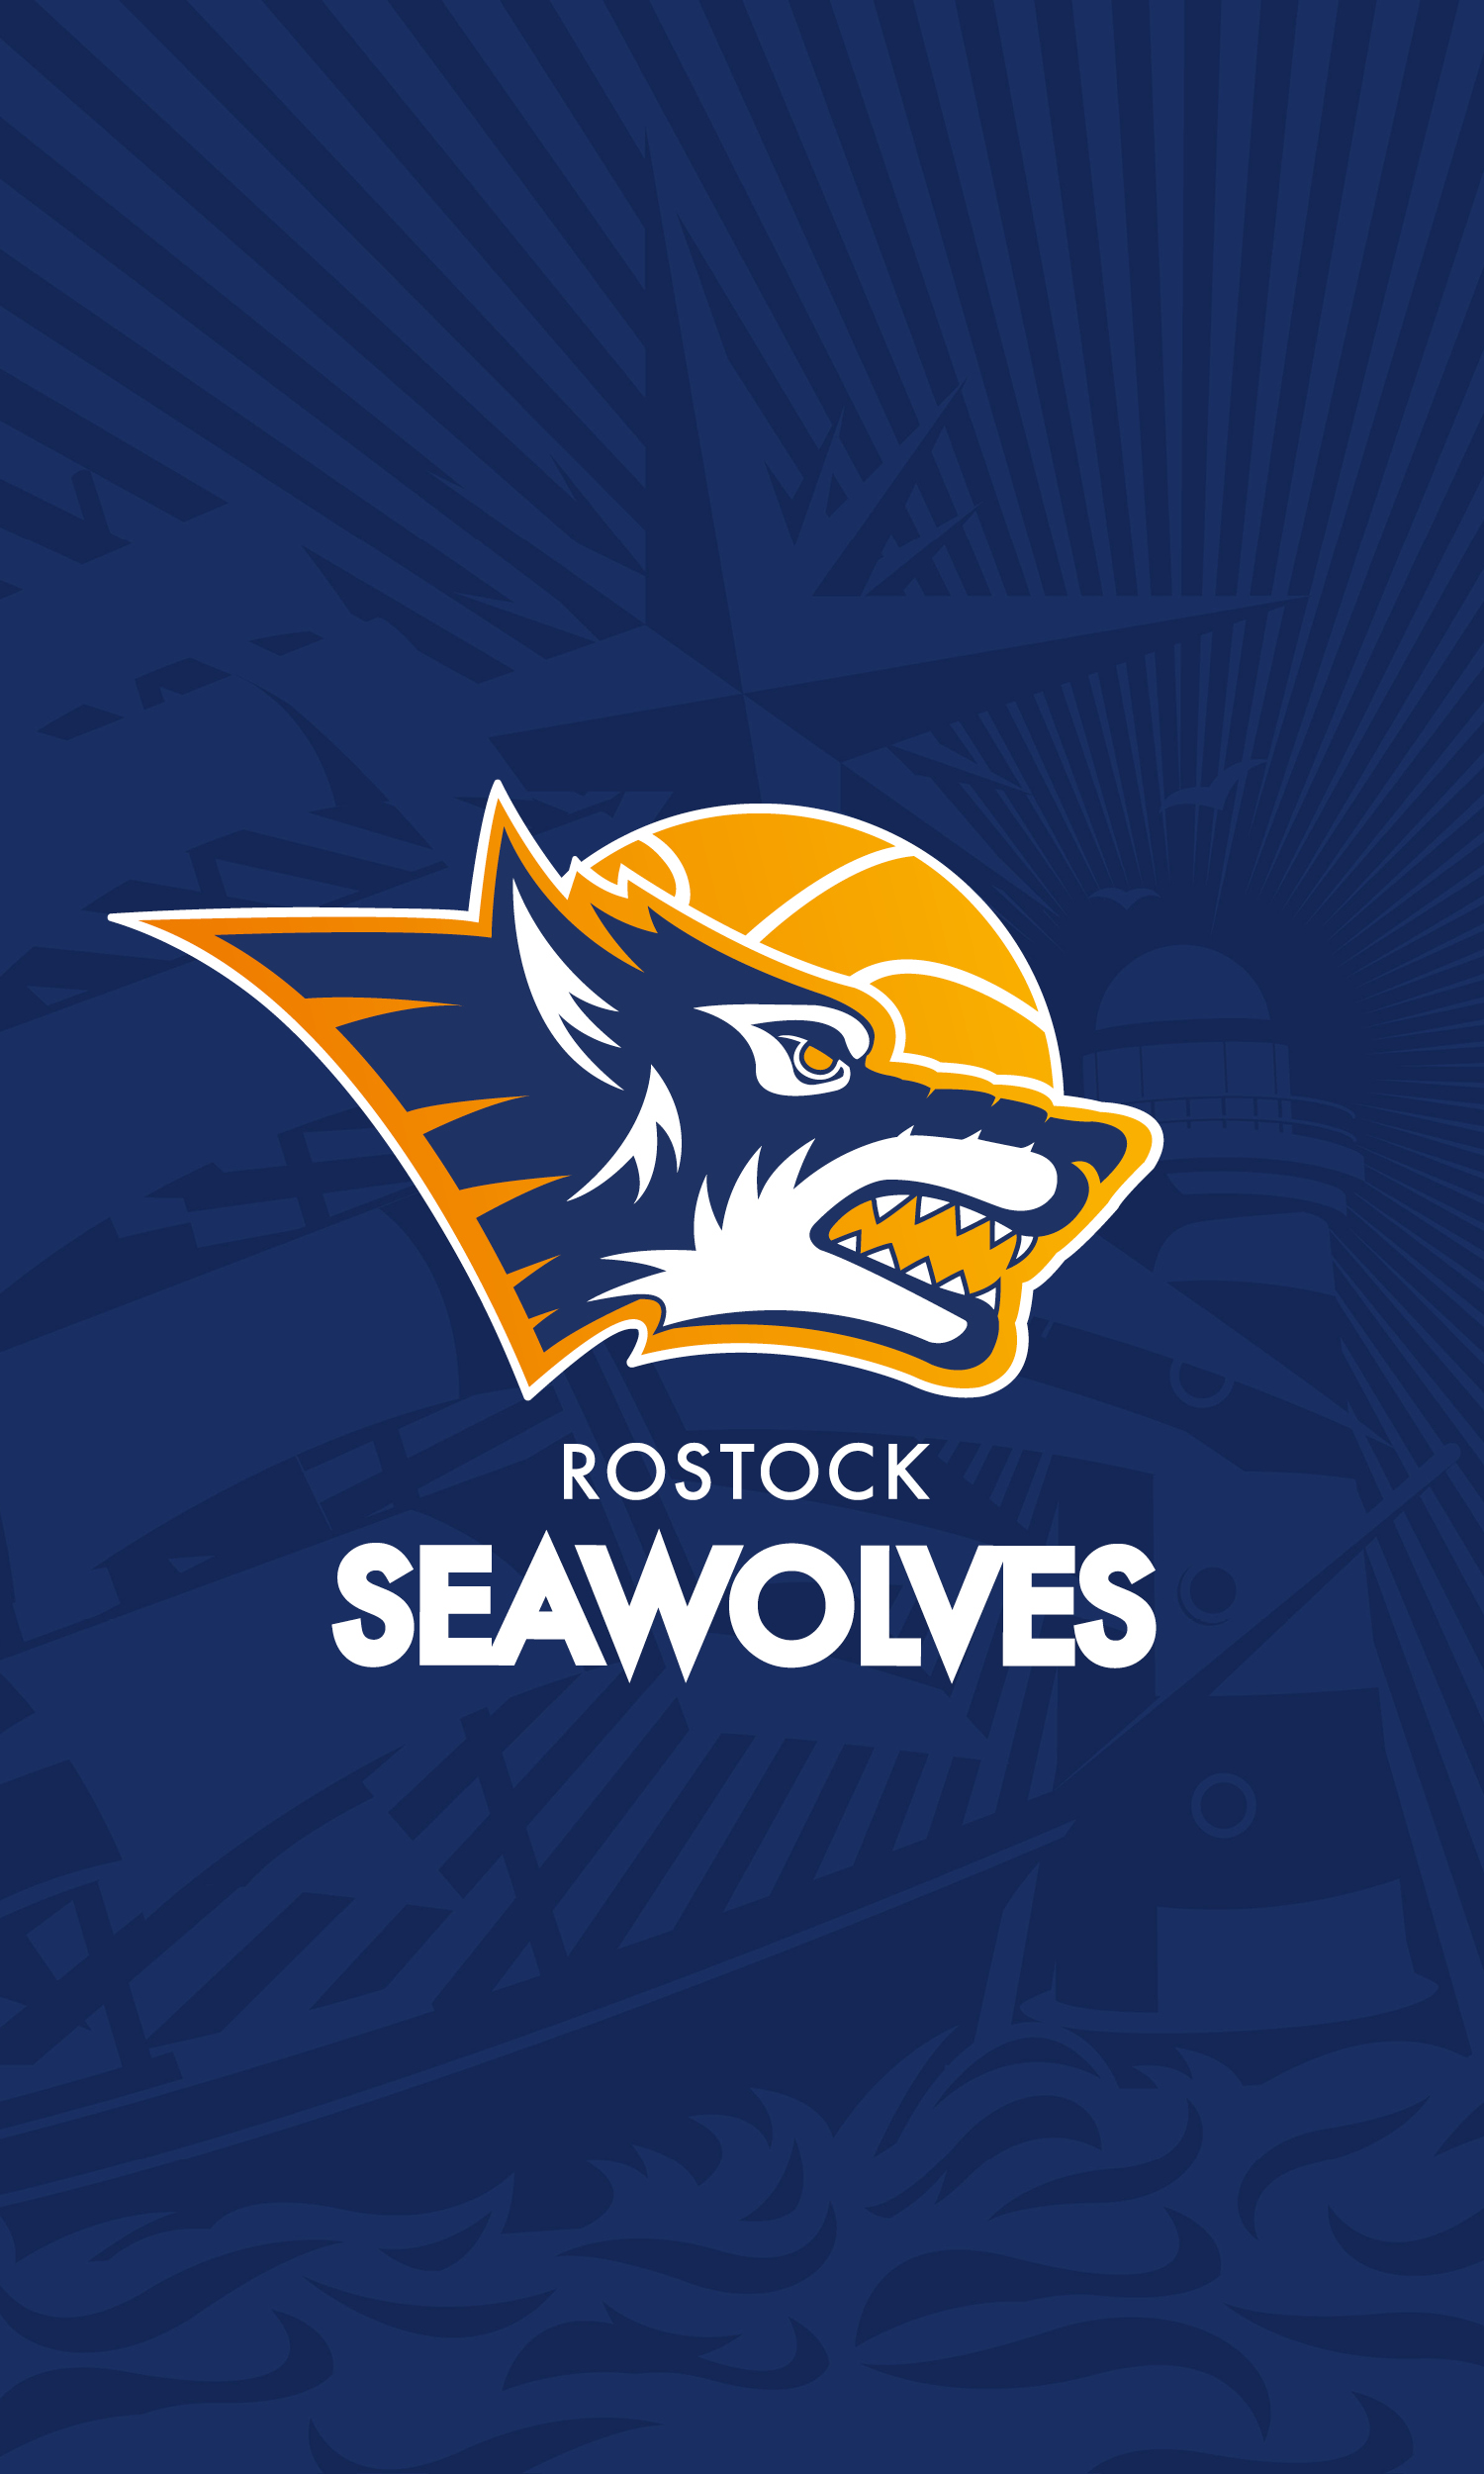 rostock seawolves heute